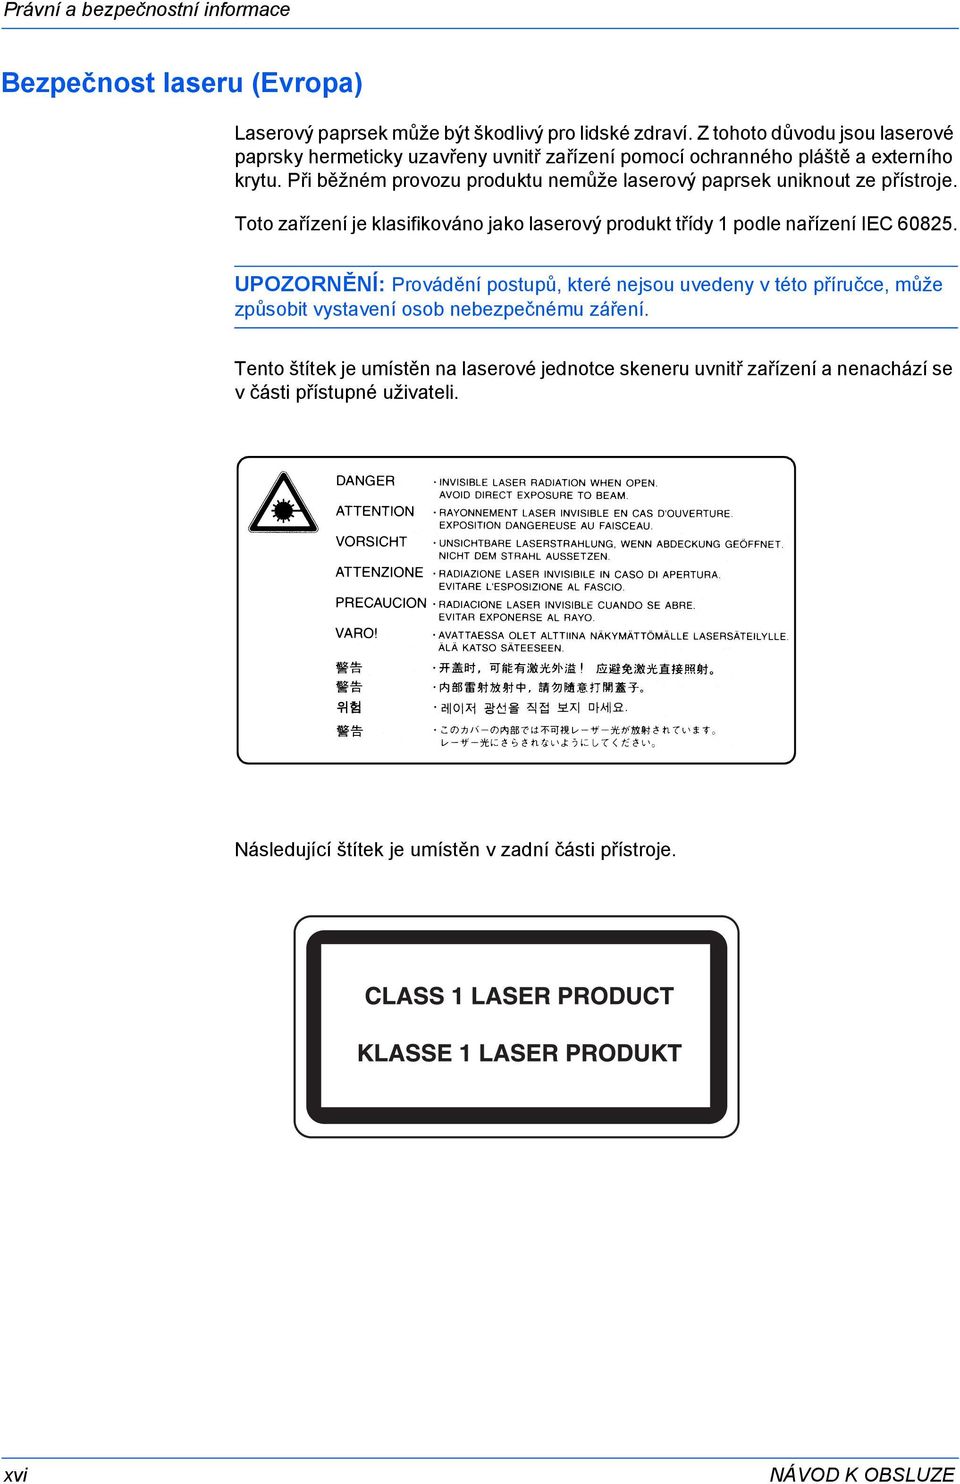 Při běžném provozu produktu nemůže laserový paprsek uniknout ze přístroje. Toto zařízení je klasifikováno jako laserový produkt třídy 1 podle nařízení IEC 60825.